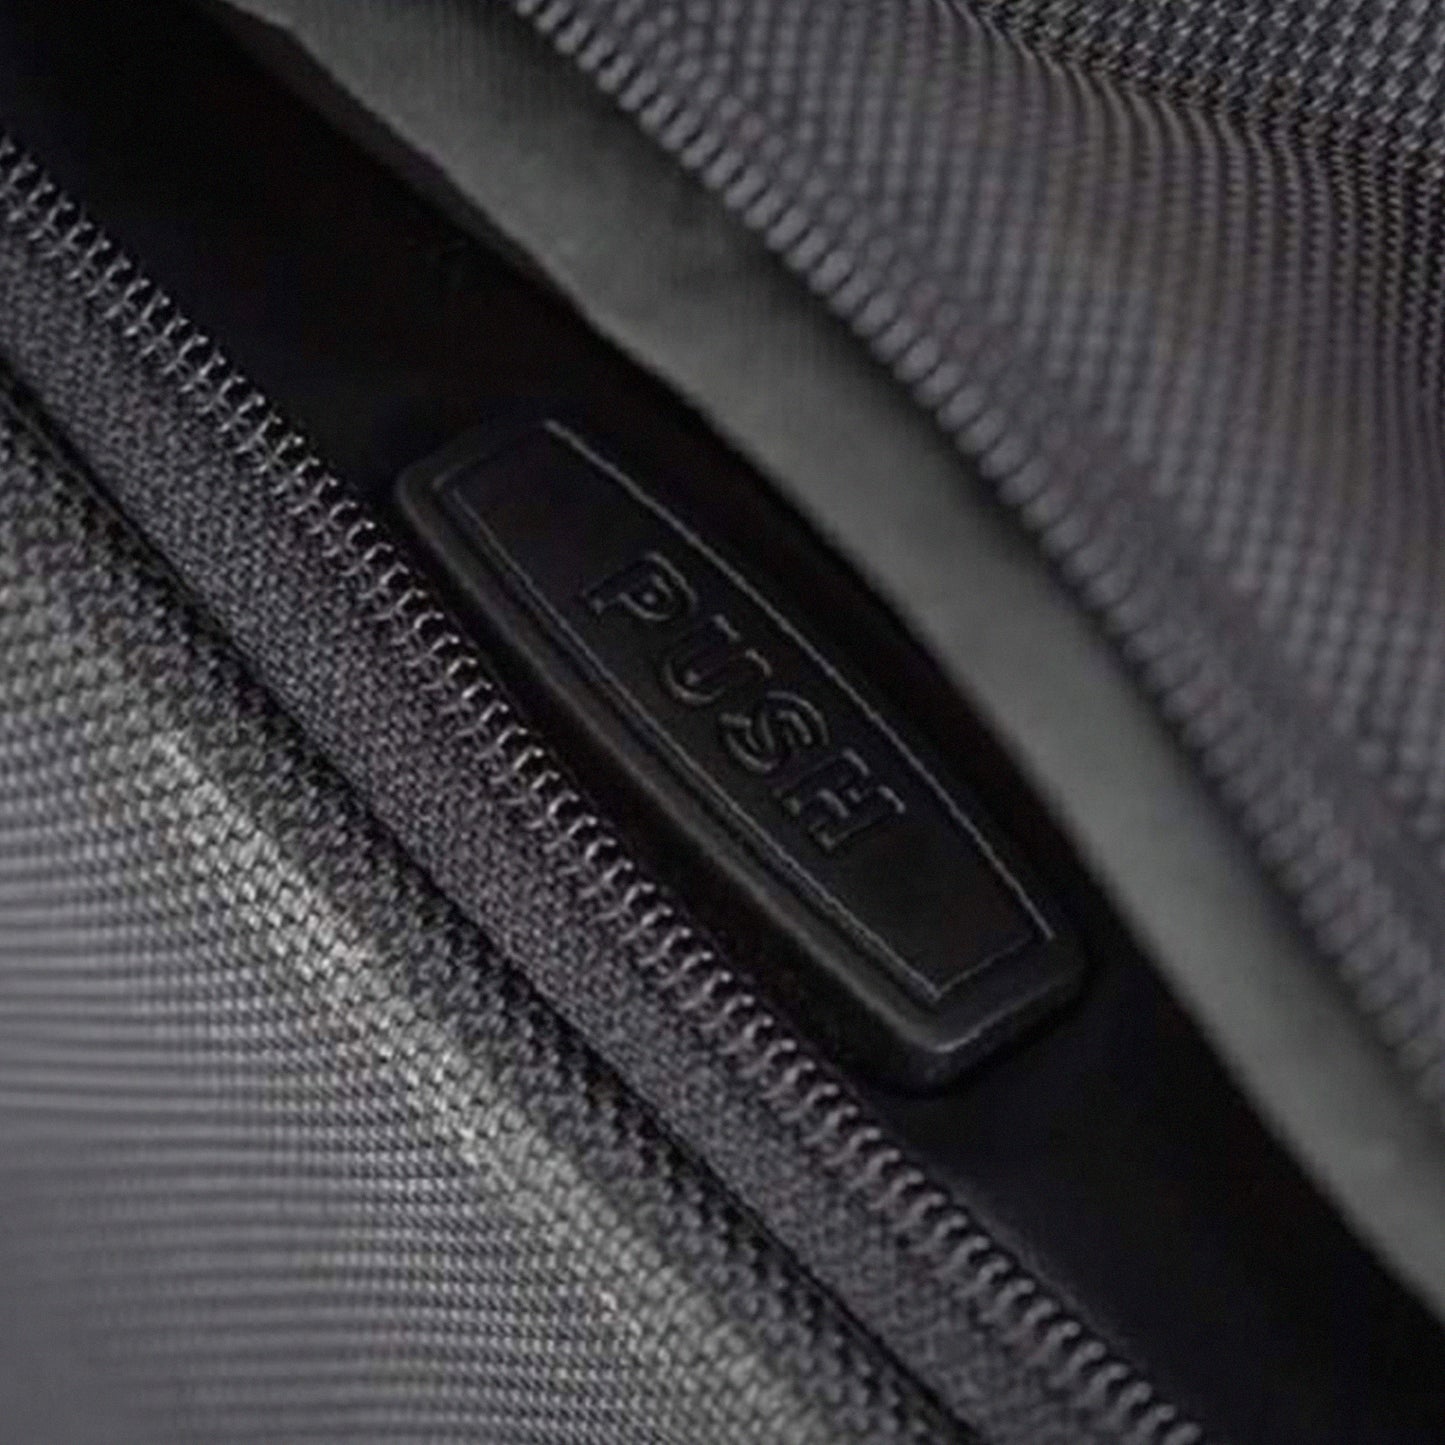 KJUST Dedicated Car Bags Set / Air 7 pcs for Tesla Model 3